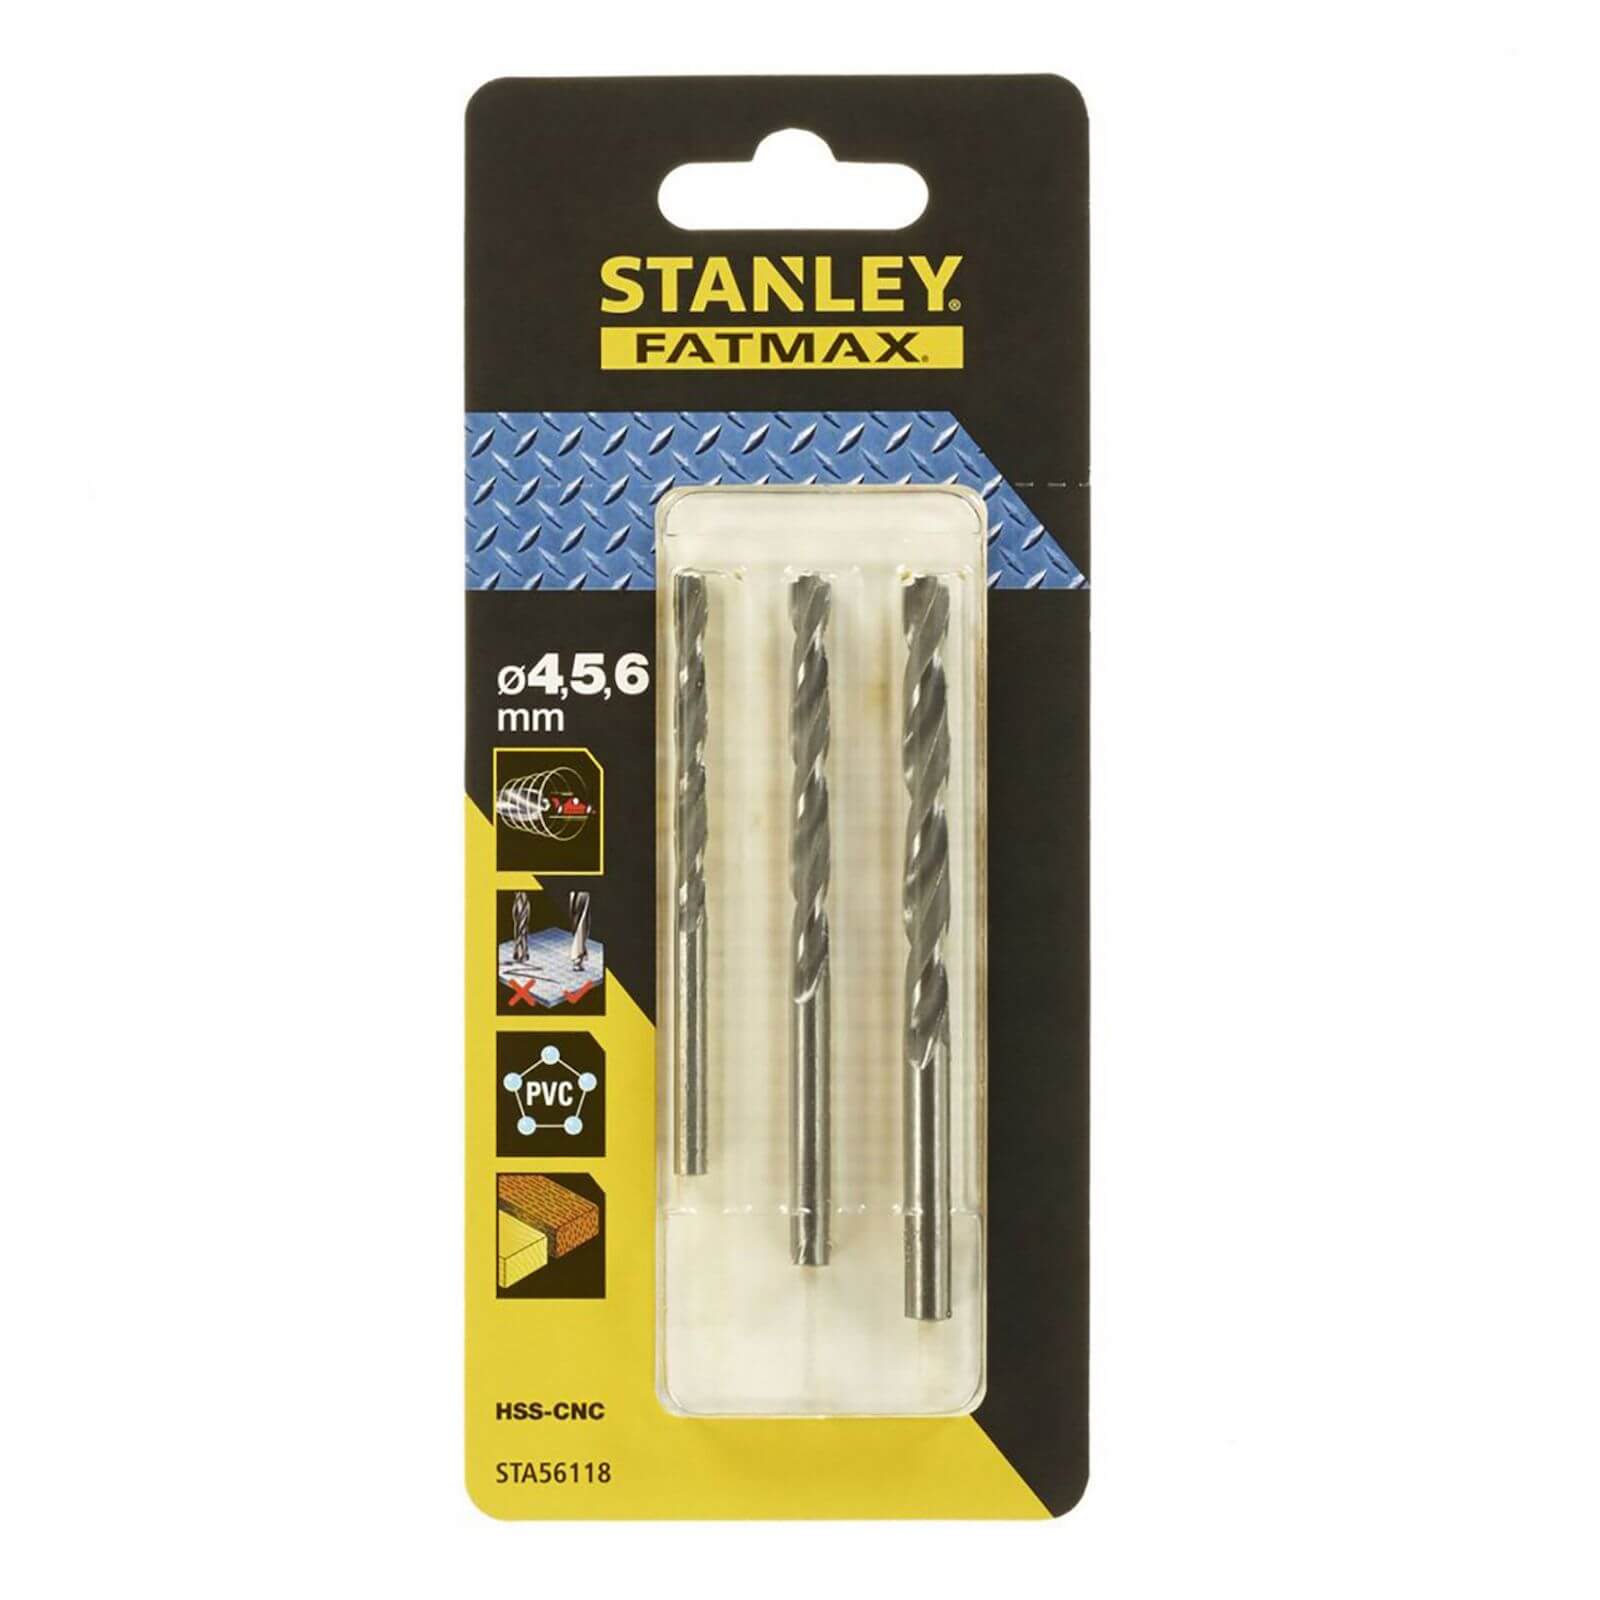 Stanley Fatmax Bullet 3 Pc Metal Drill Bit Pack - STA56118-XJ